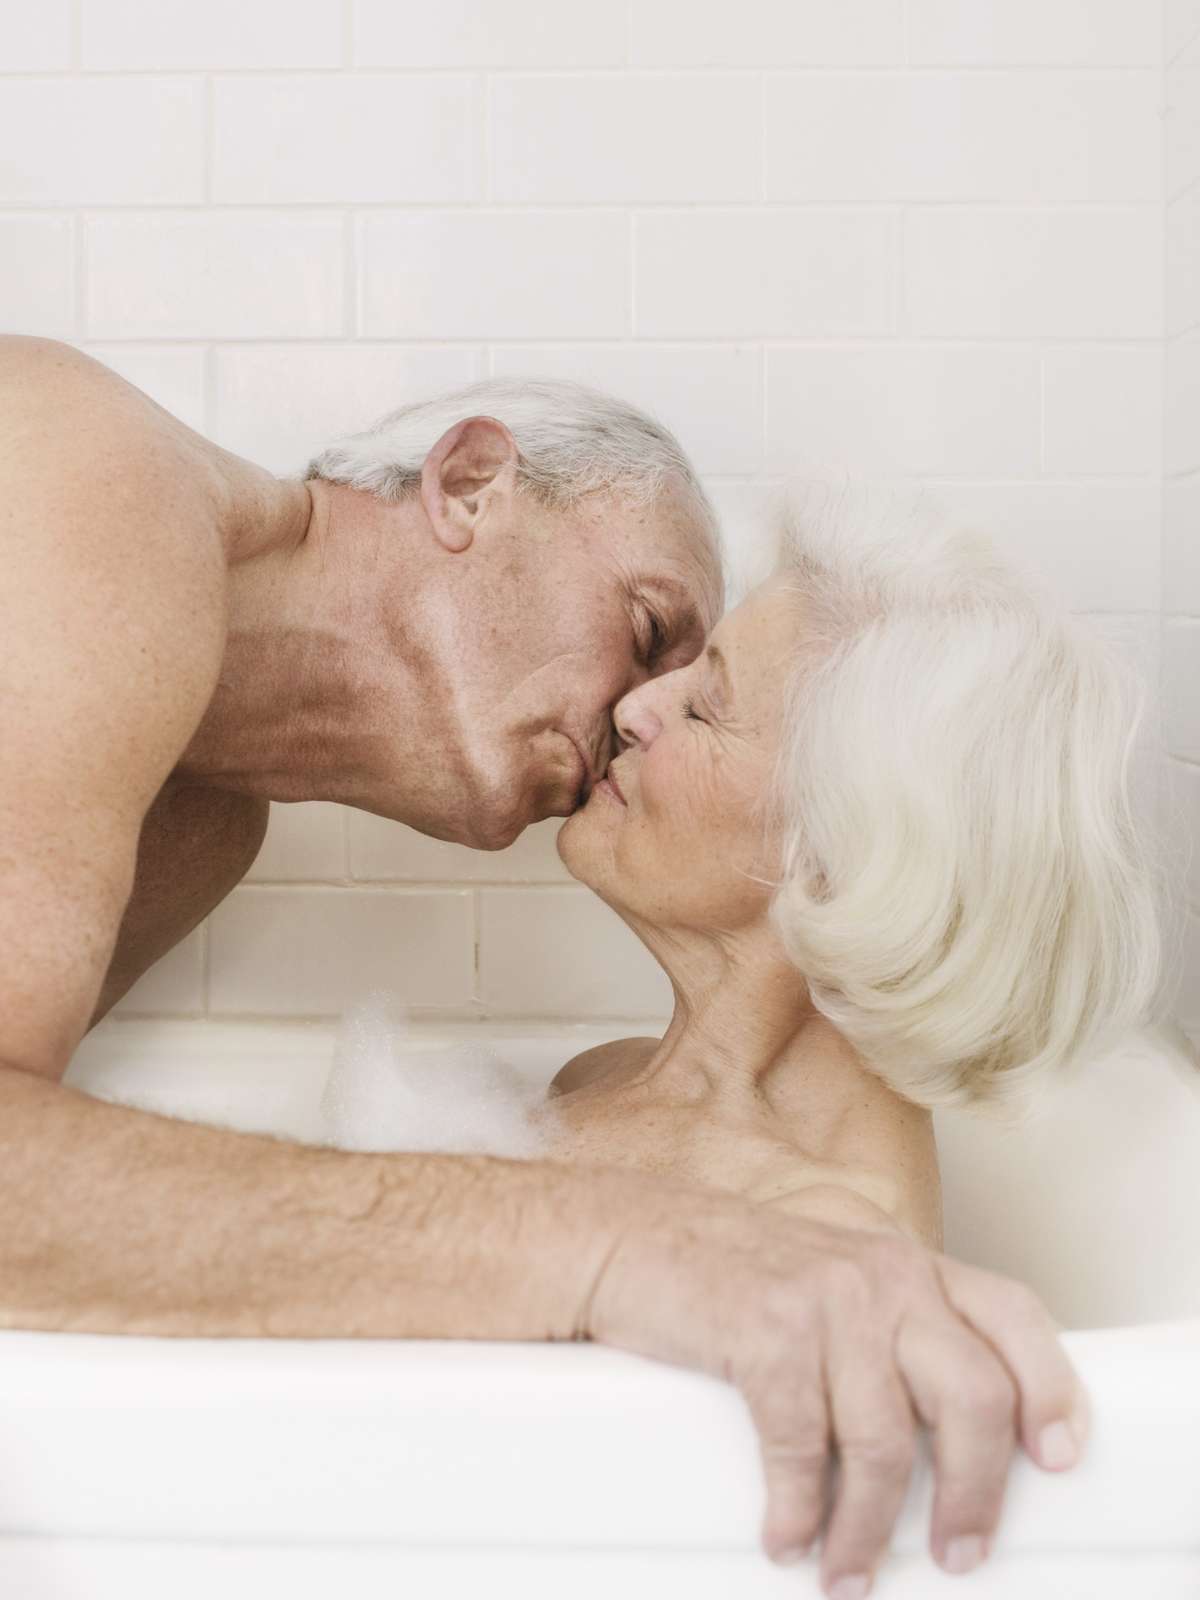 Estudo rebate mito de que mulheres mais velhas não gostam de sexo